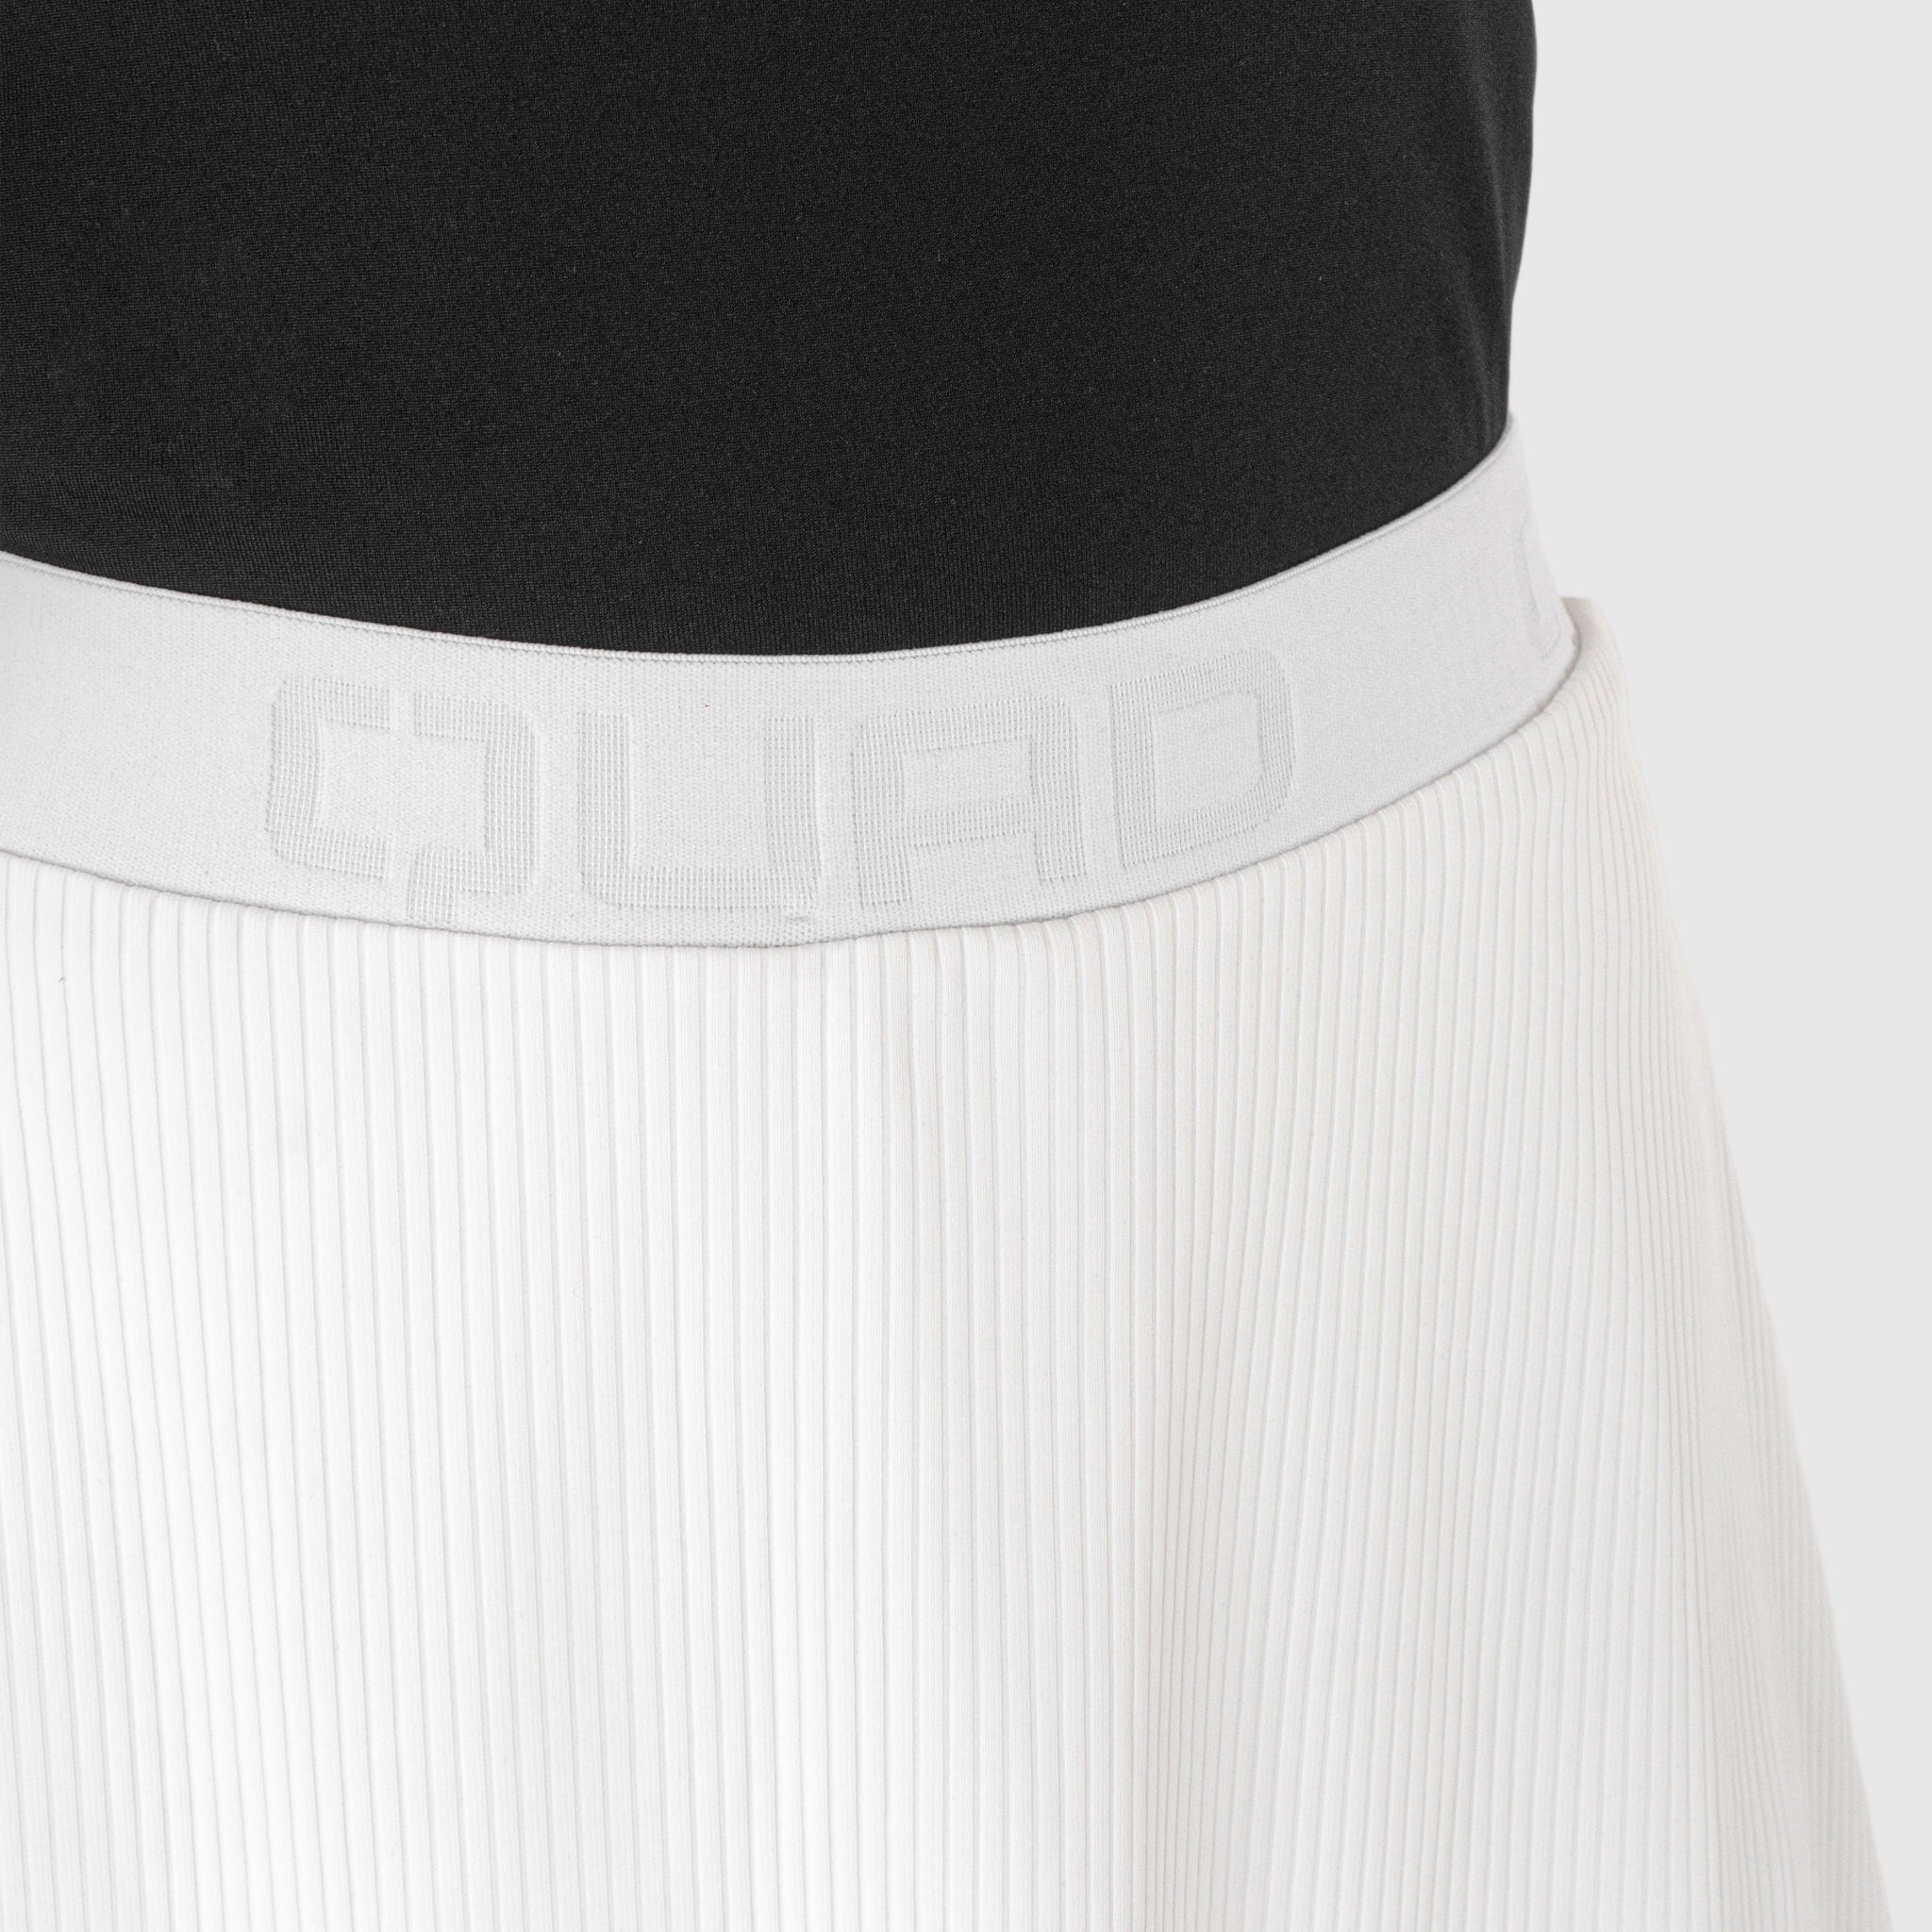 Quad Padel Lightweight Skirt white front detail